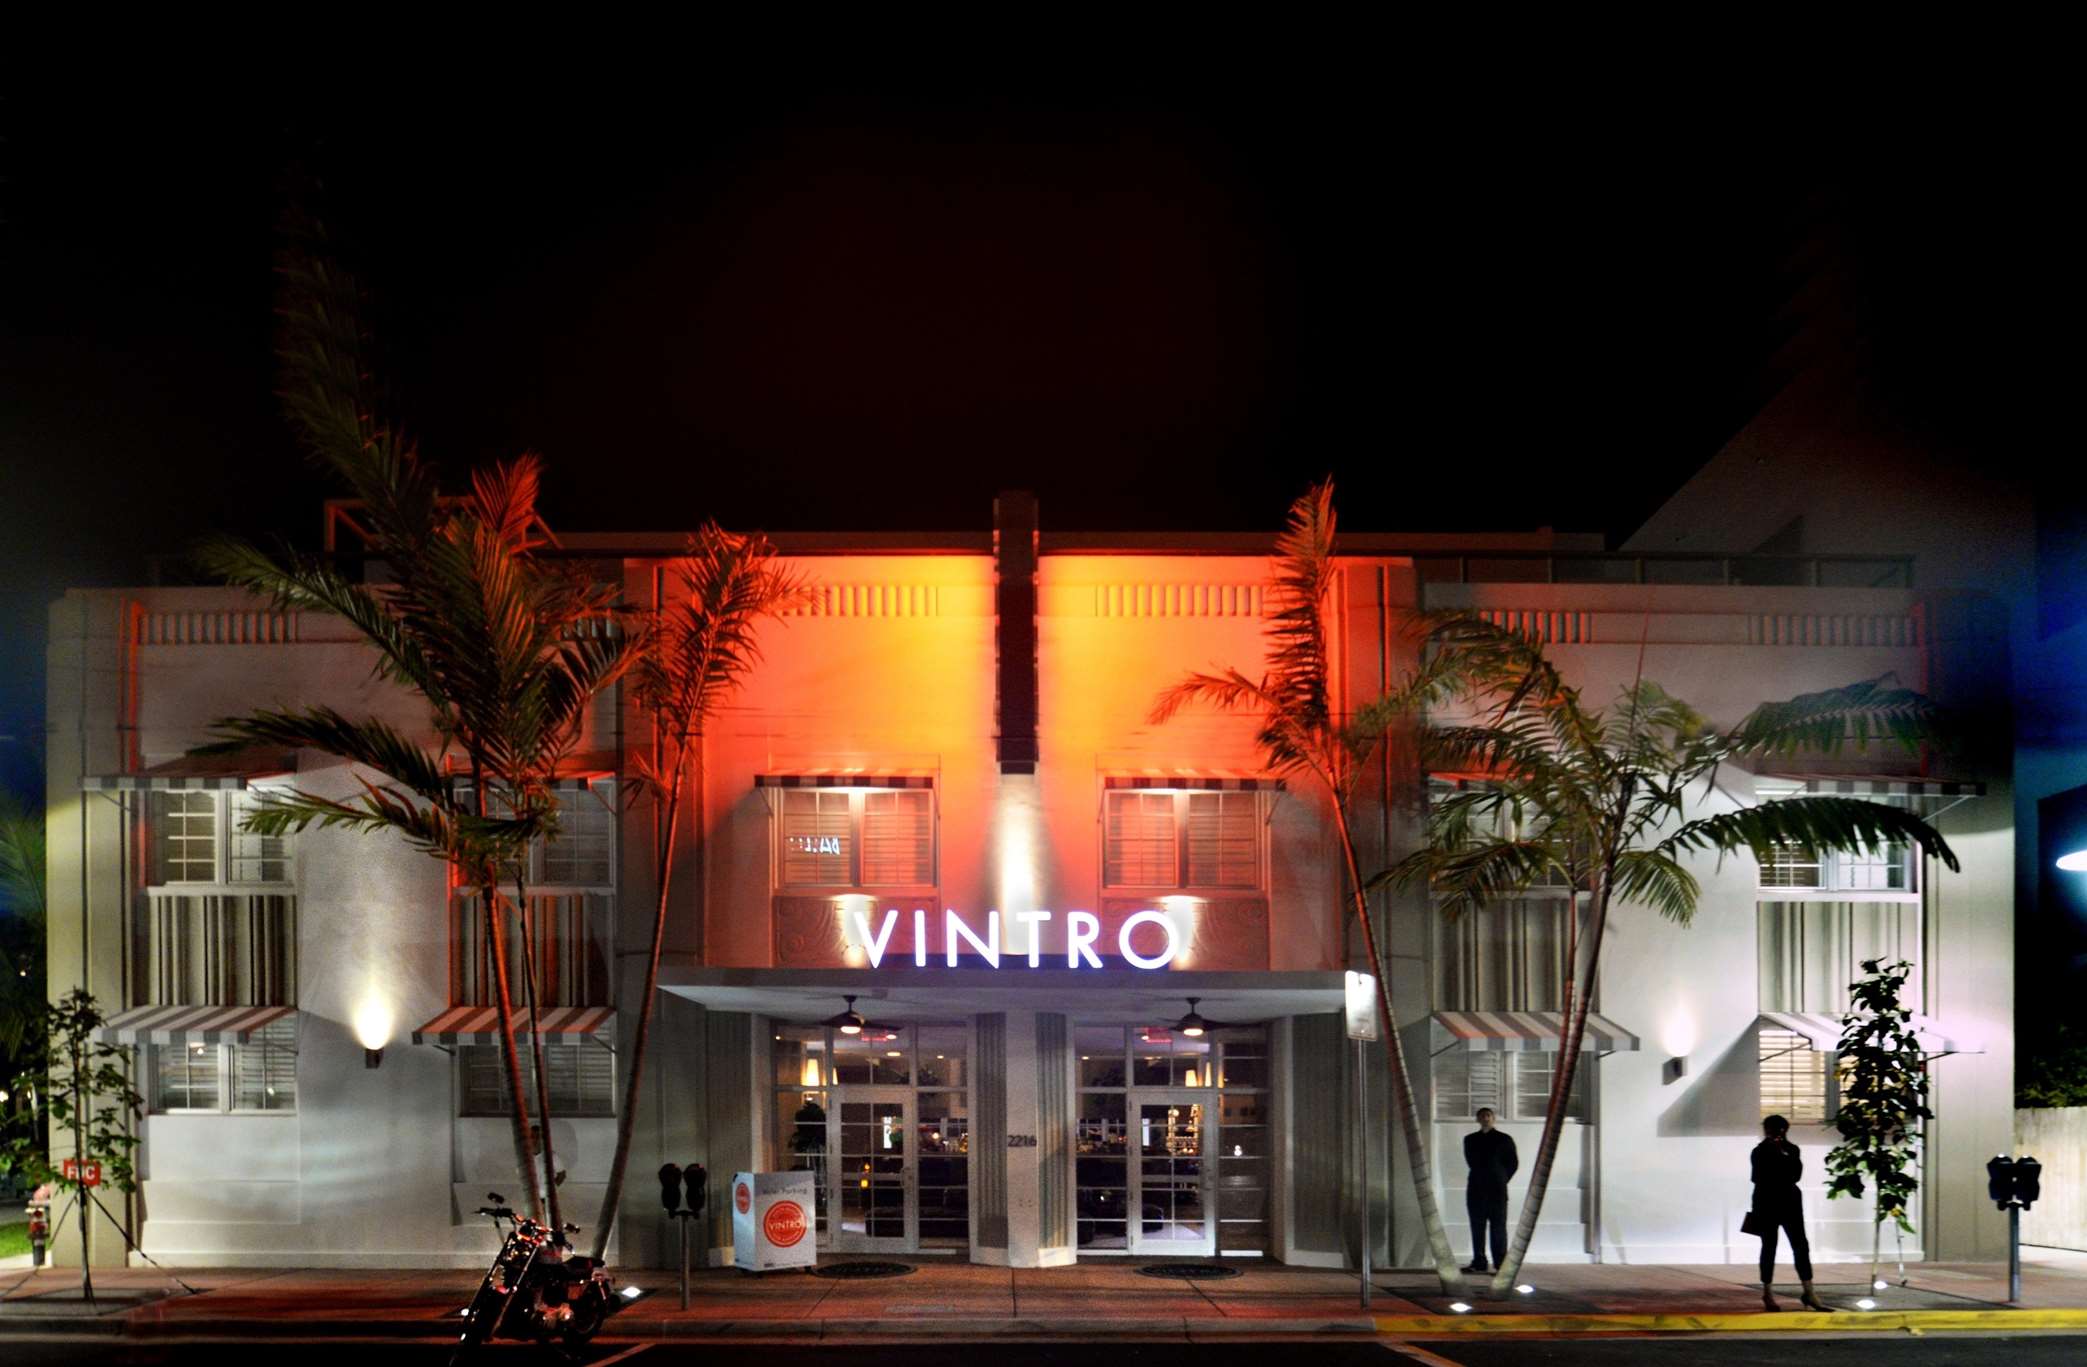 The Vintro Hotel